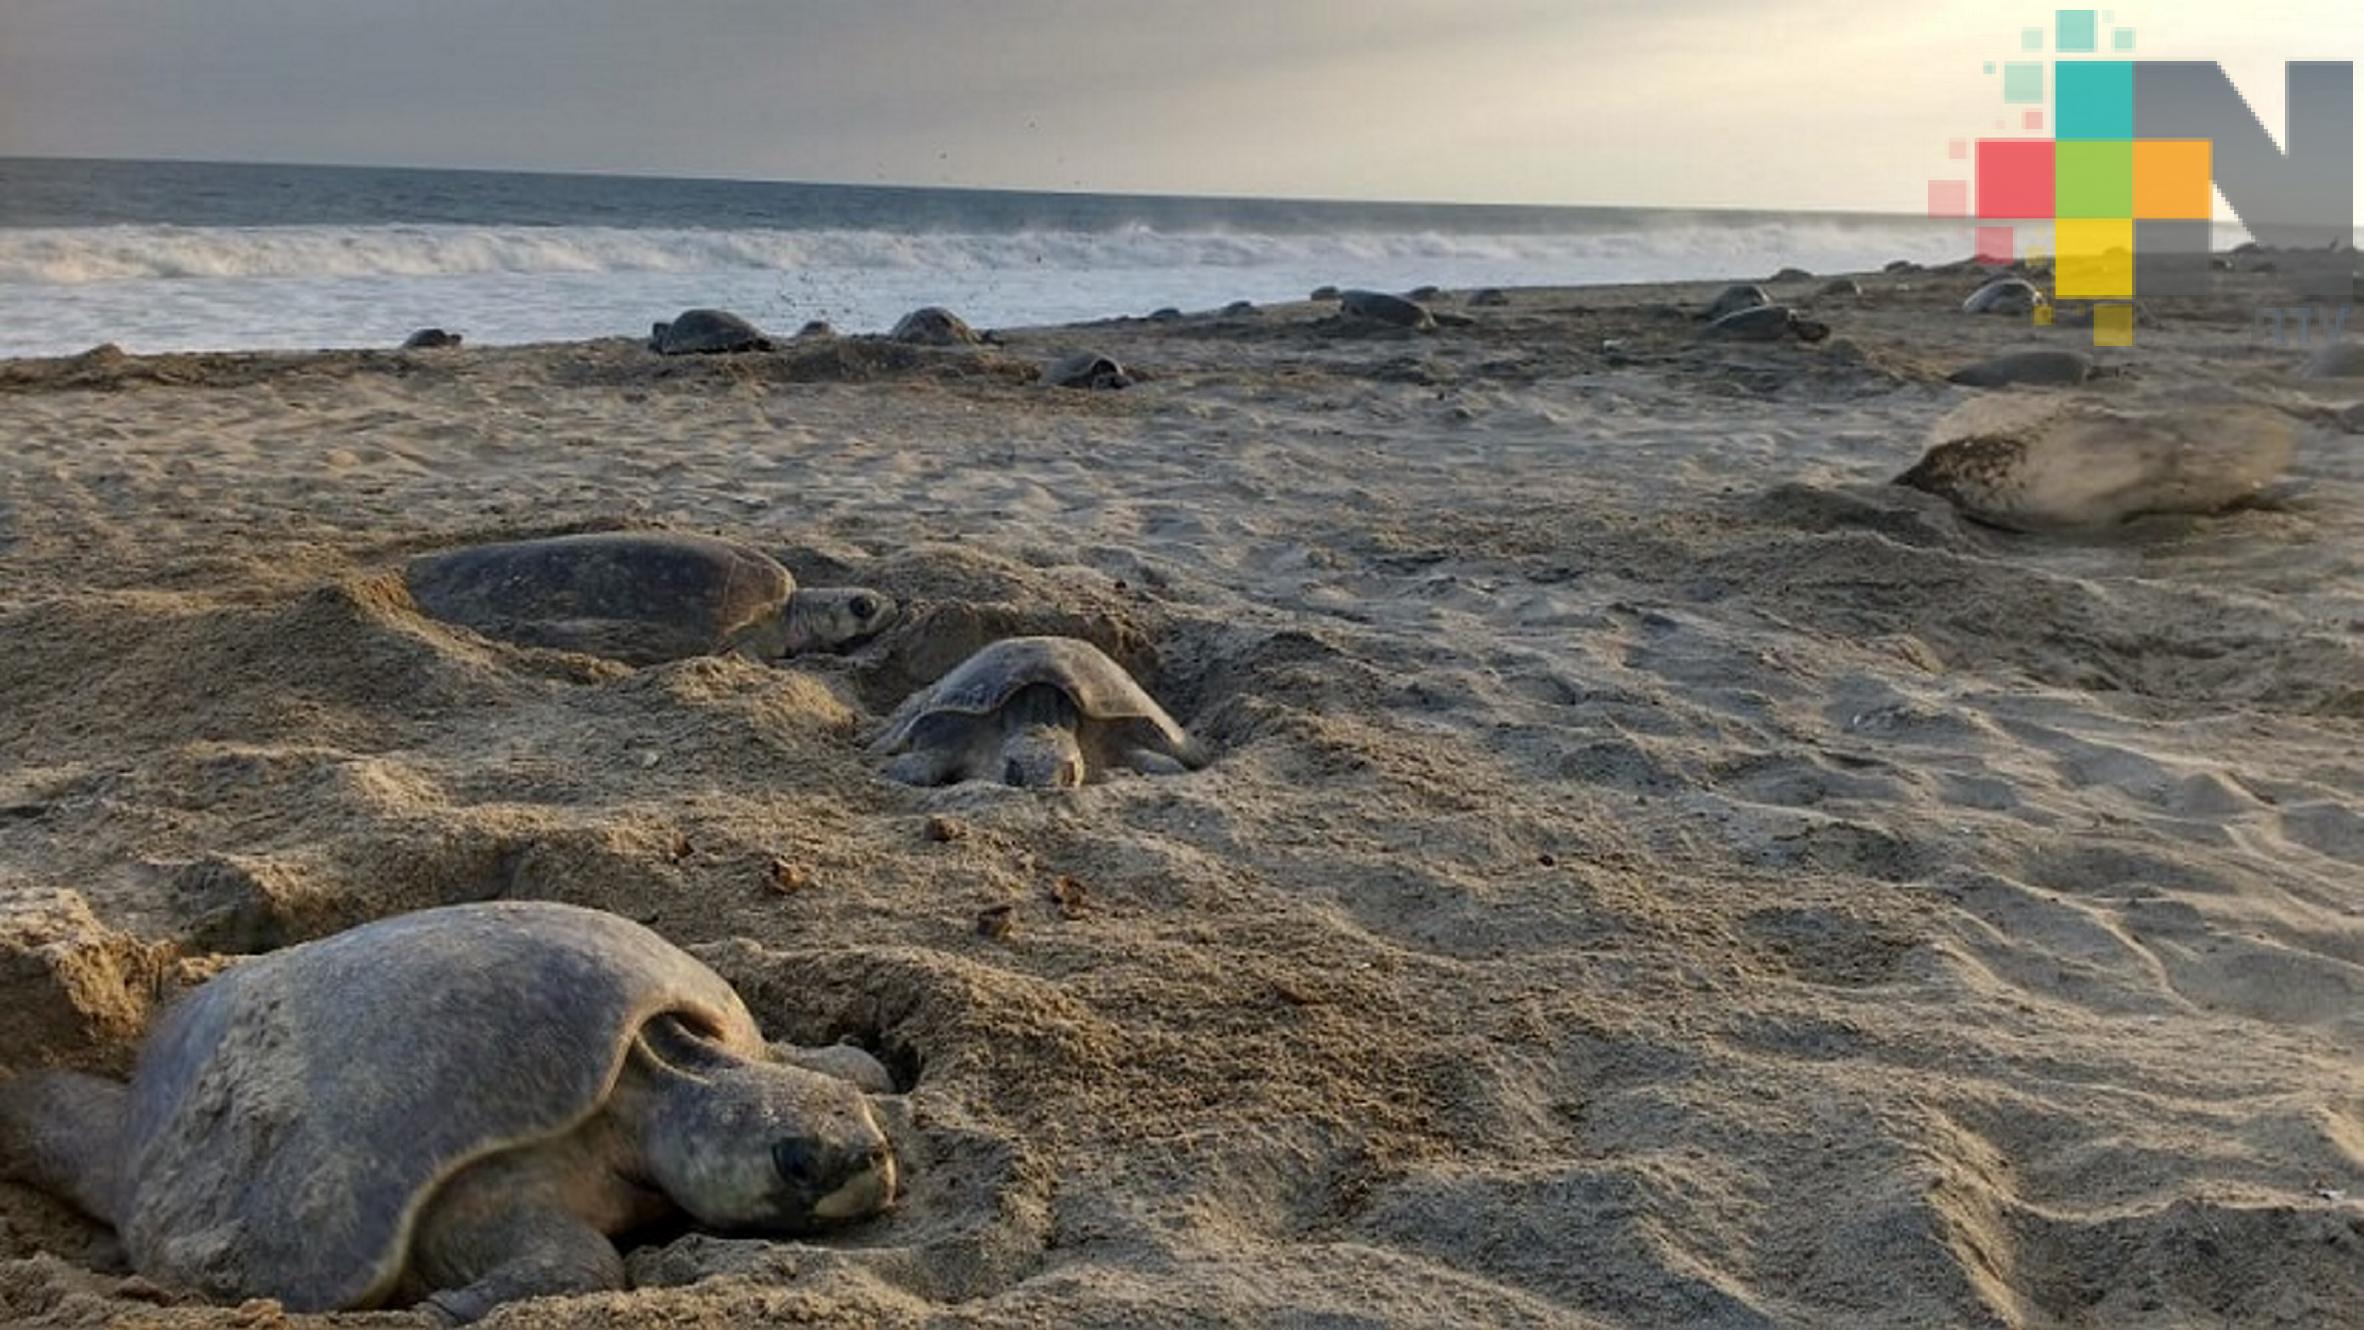 Salvar a las tortugas marinas va más allá de evitar uso de popotes